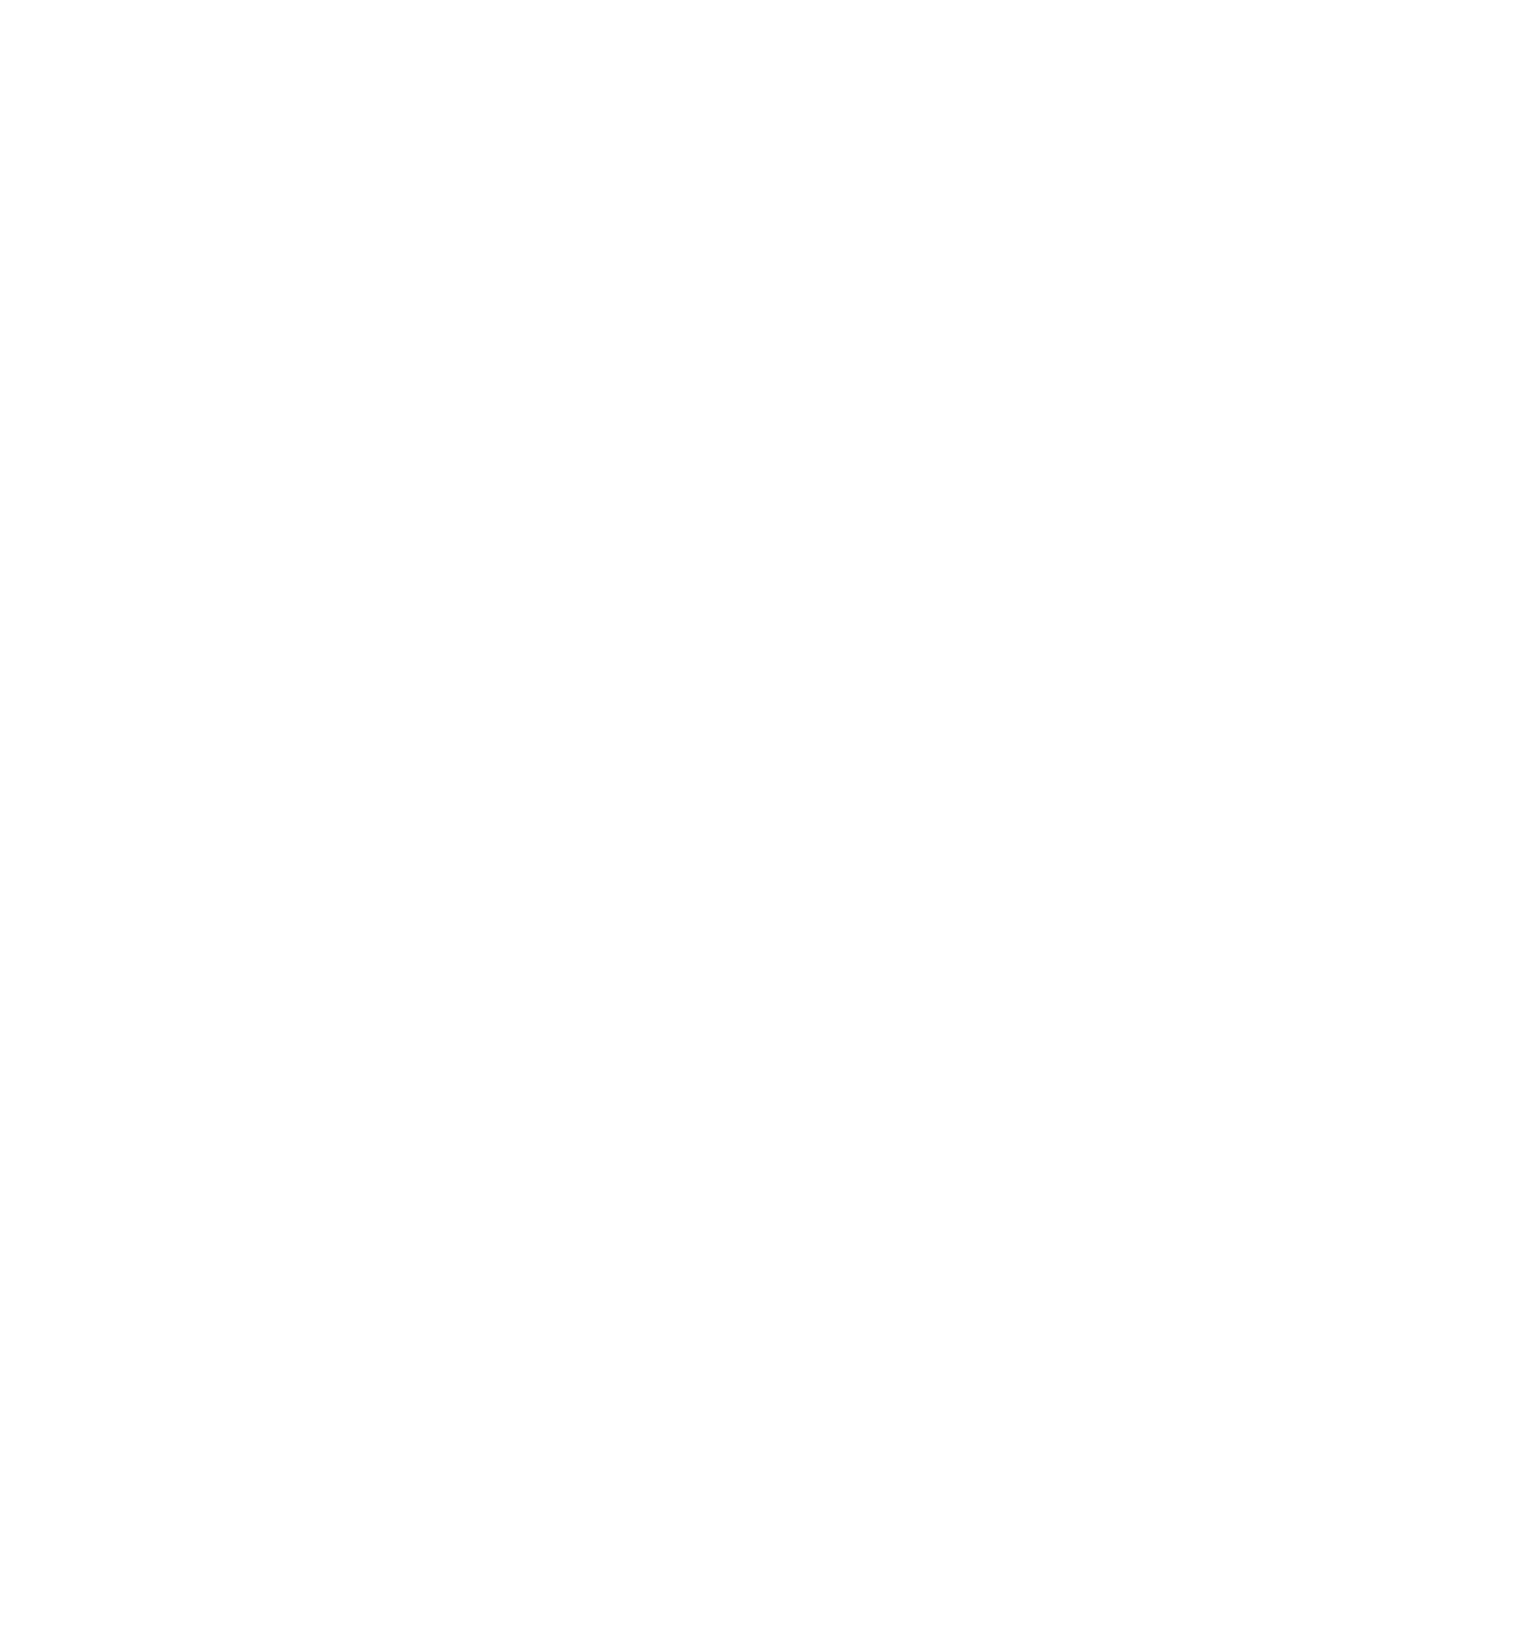 Mashreqbank logo large for dark backgrounds (transparent PNG)